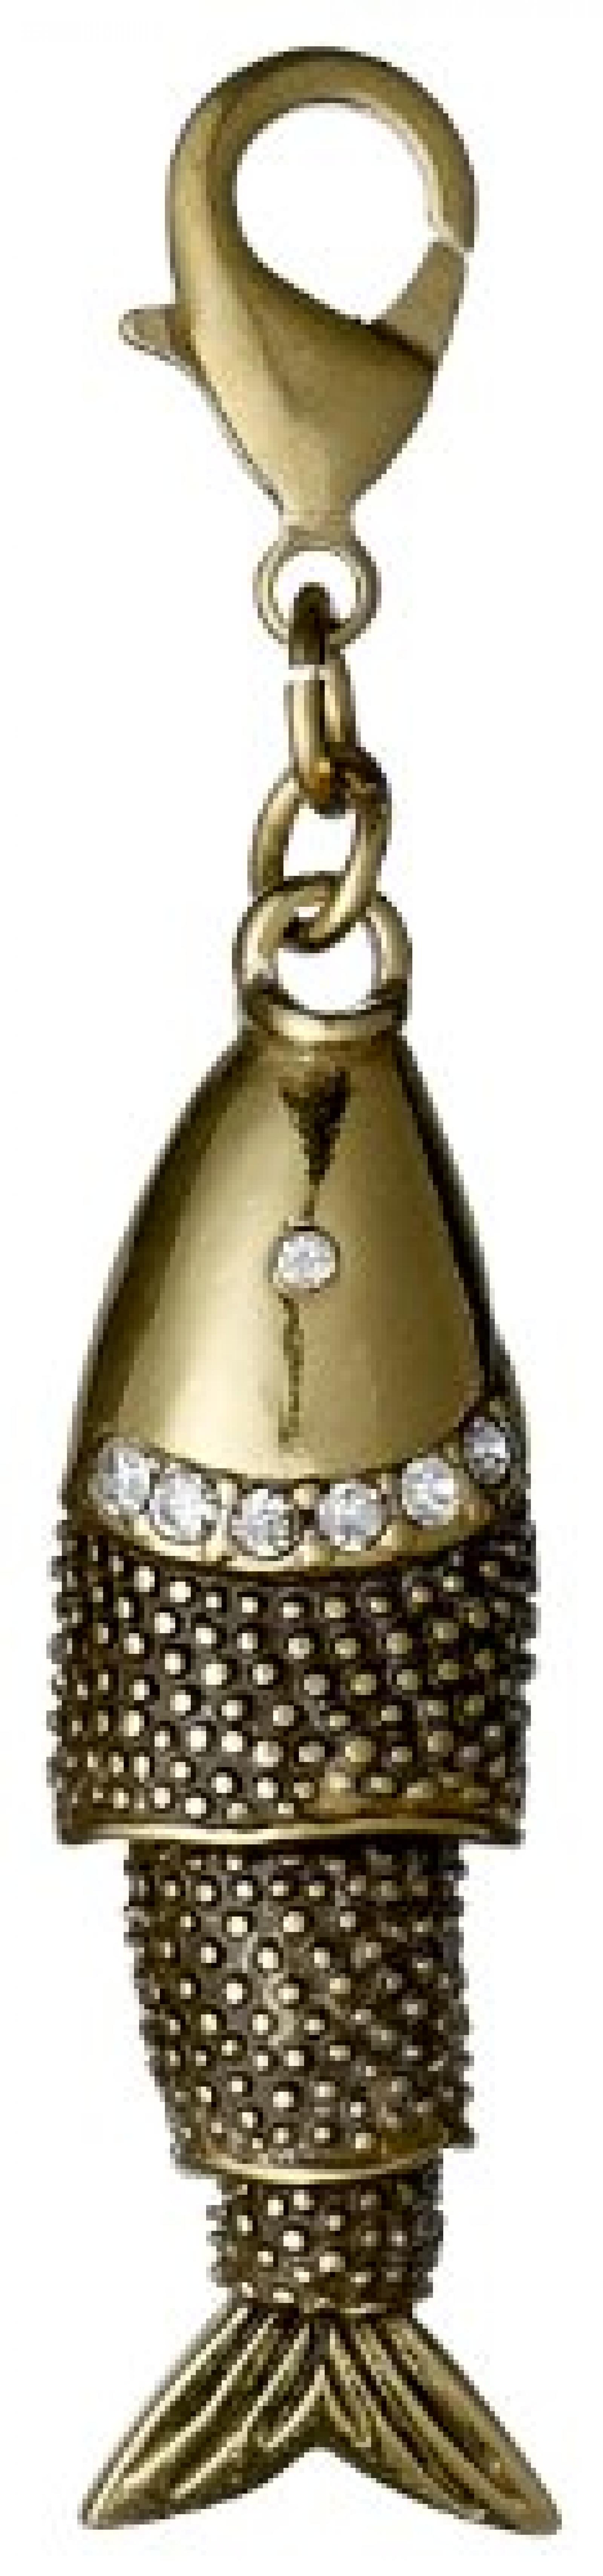 Pilgrim Jewelry Damen-Anhänger Messing aus der Serie Mega vergoldet,weiß 6.5 cm 411322014 